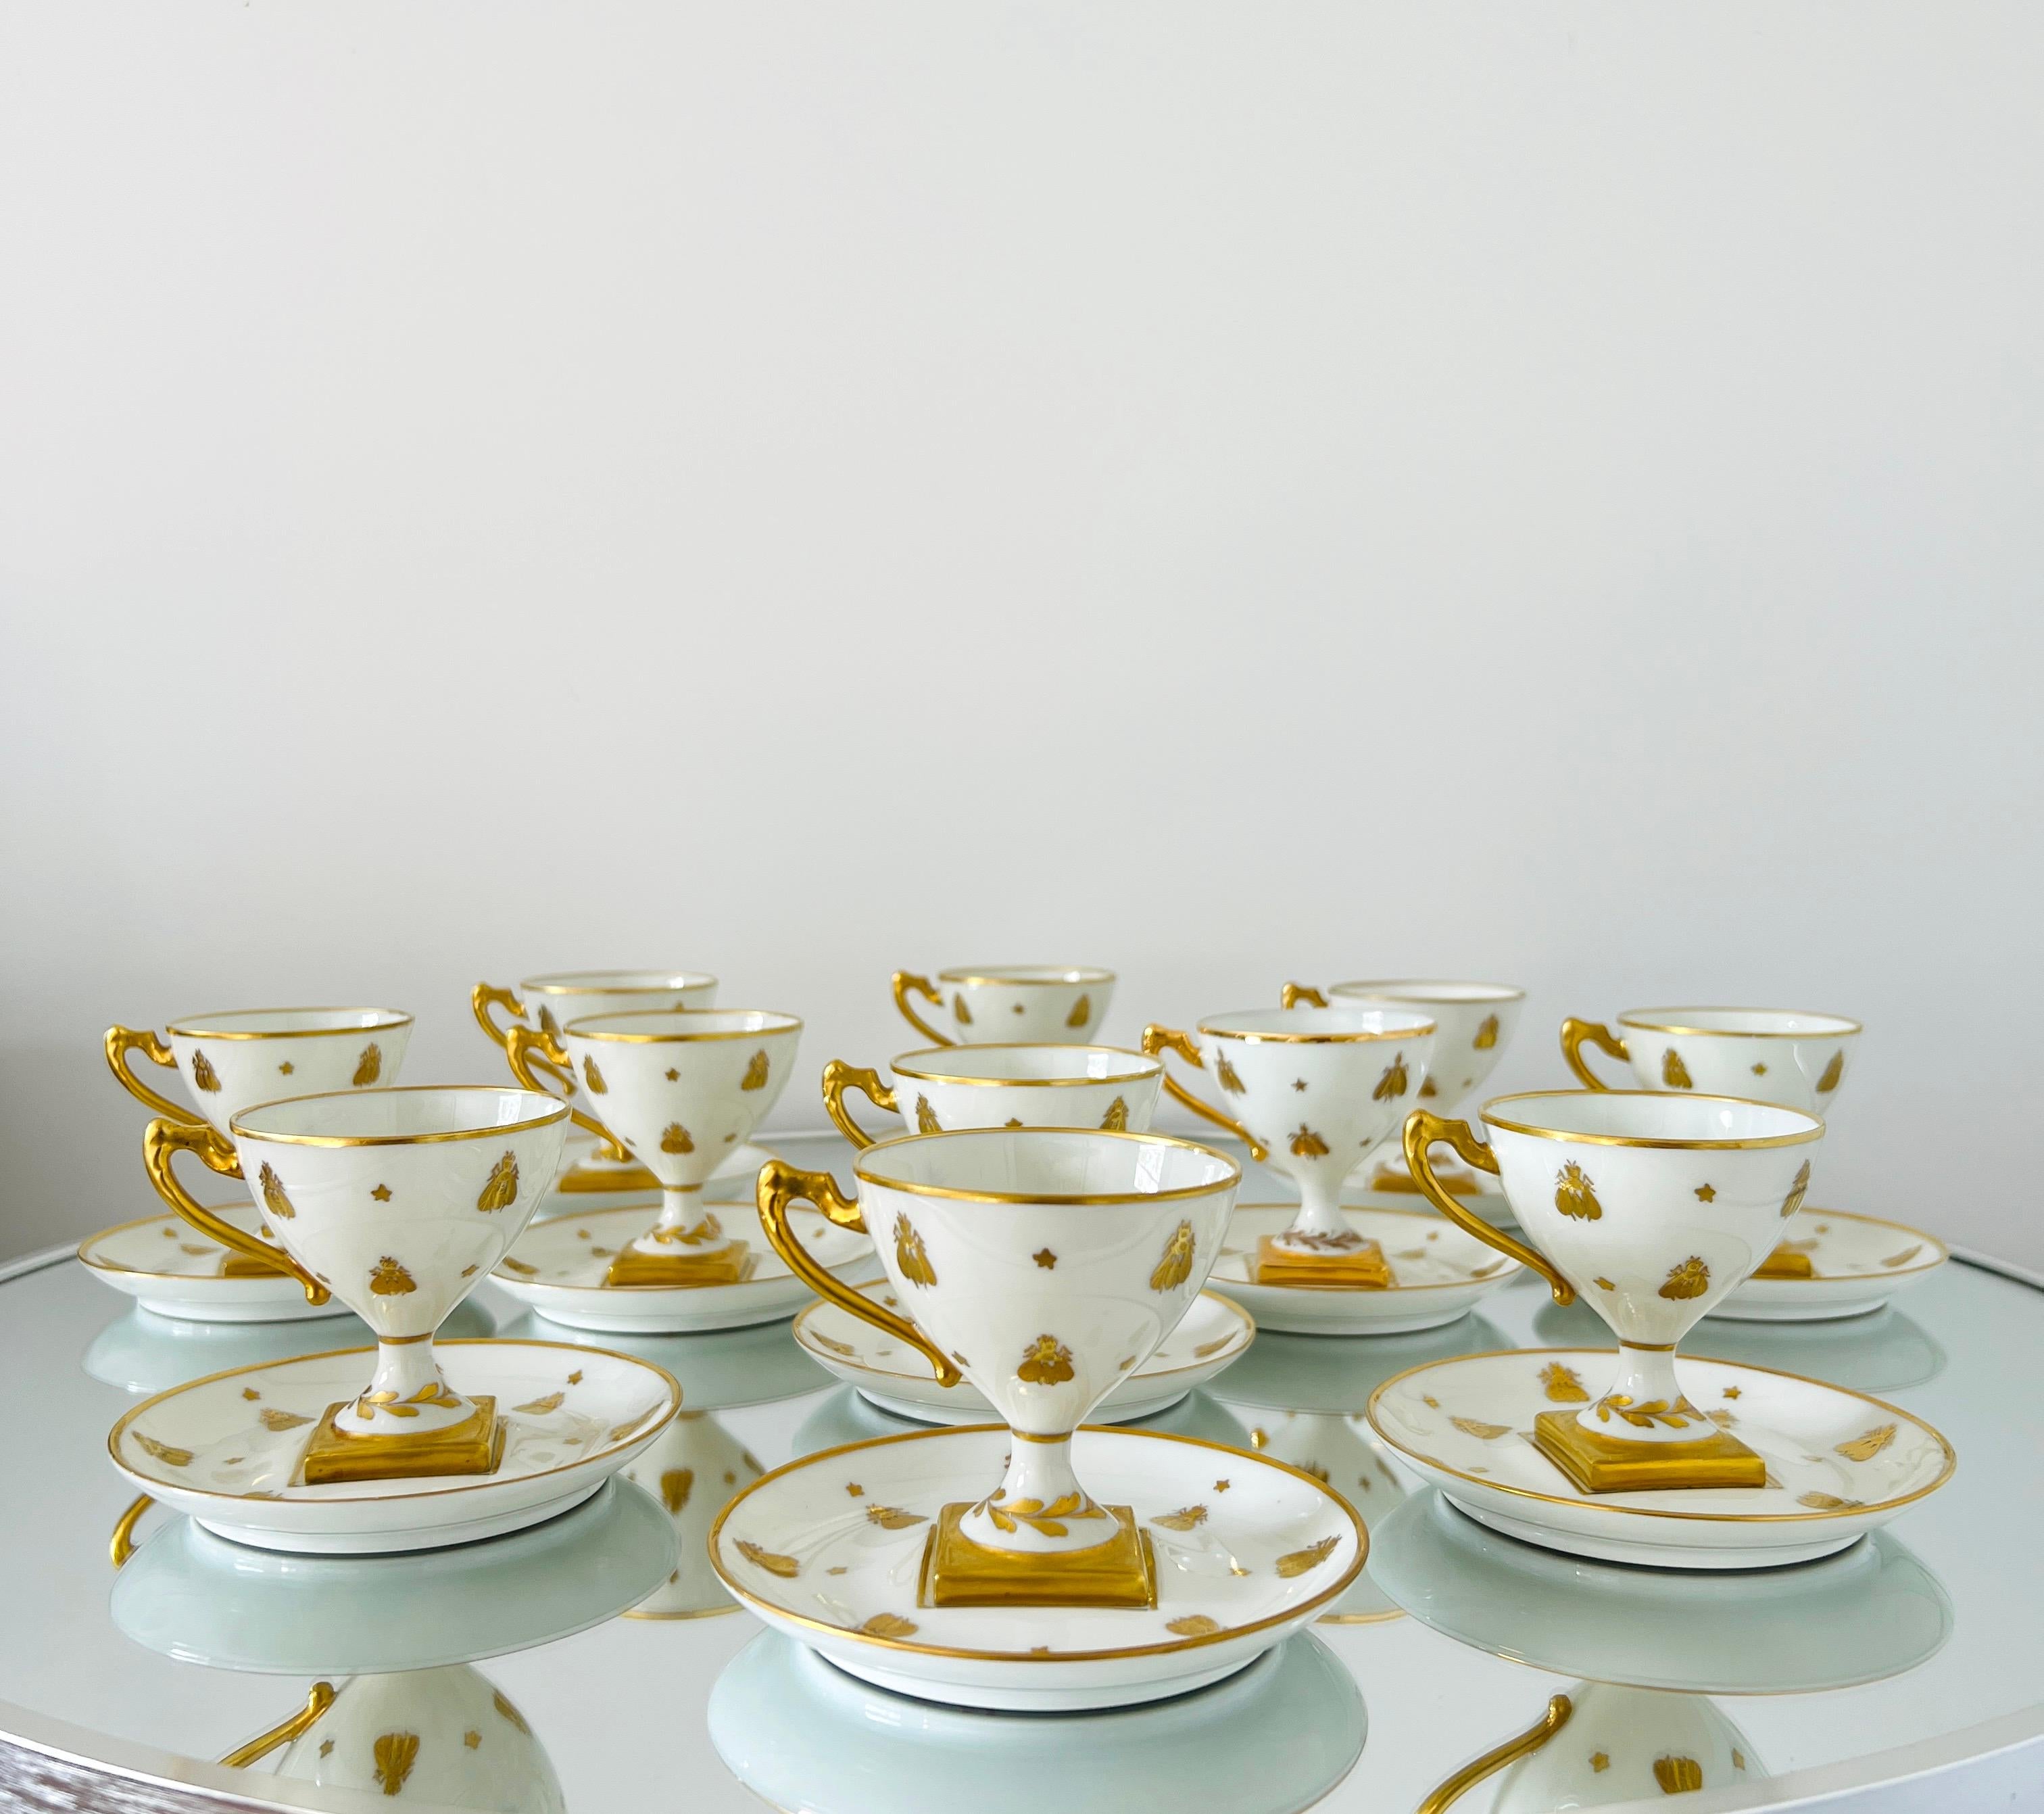 Exquis service à demitasse néoclassique composé de porcelaine fine et d'or 24K par Camille Le Tallec. Le motif est issu de la Collection Sbeilles et représente des abeilles d'or napoléoniennes peintes à la main en or sur de la porcelaine blanche.